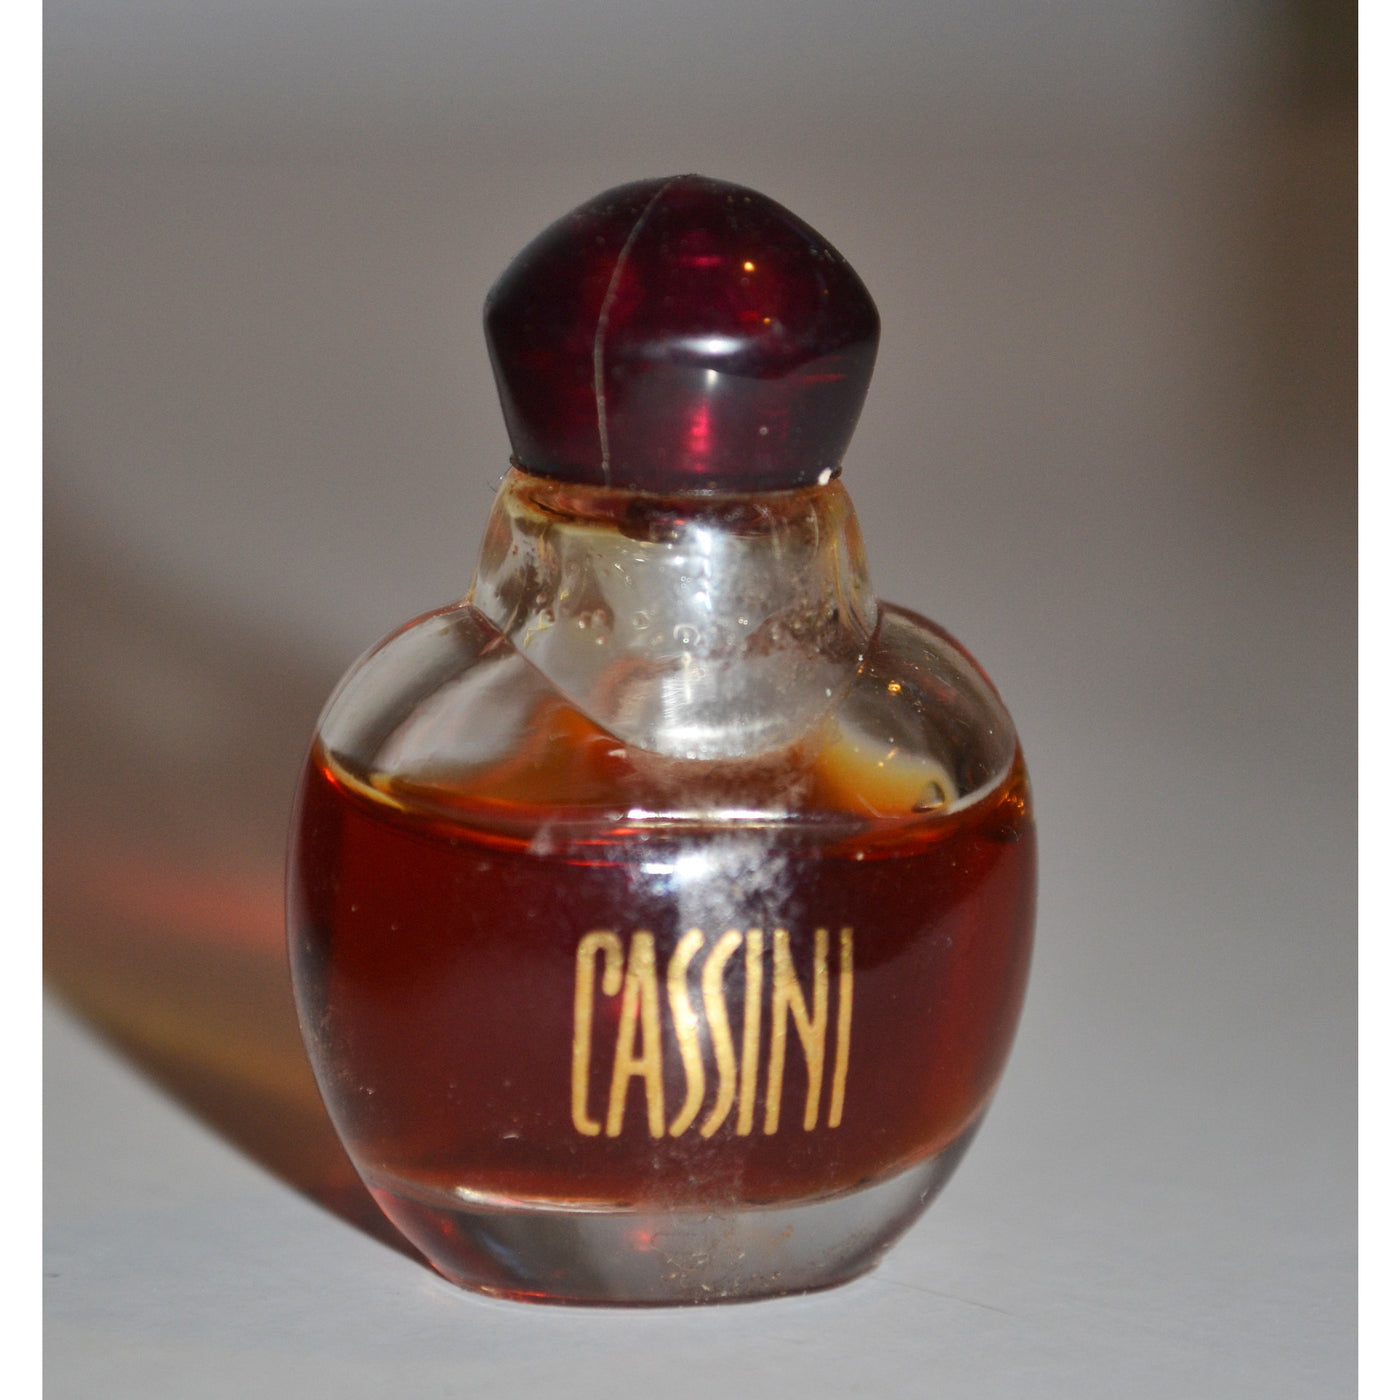 Vintage Cassini Eau De Parfum By Oleg Cassini